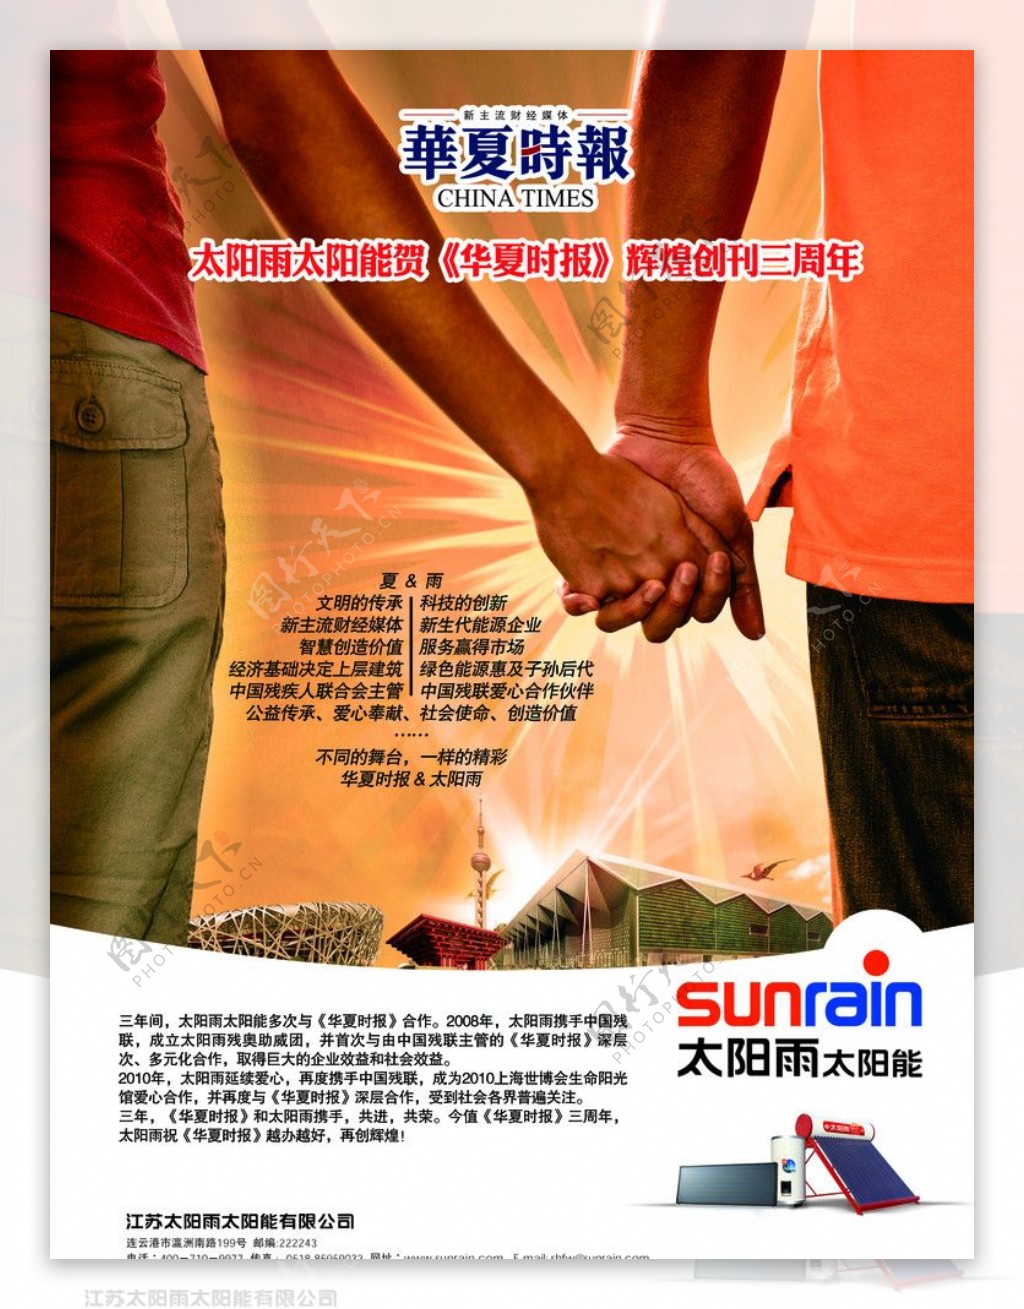 太阳雨太阳能贺华夏时报3周年广告图片